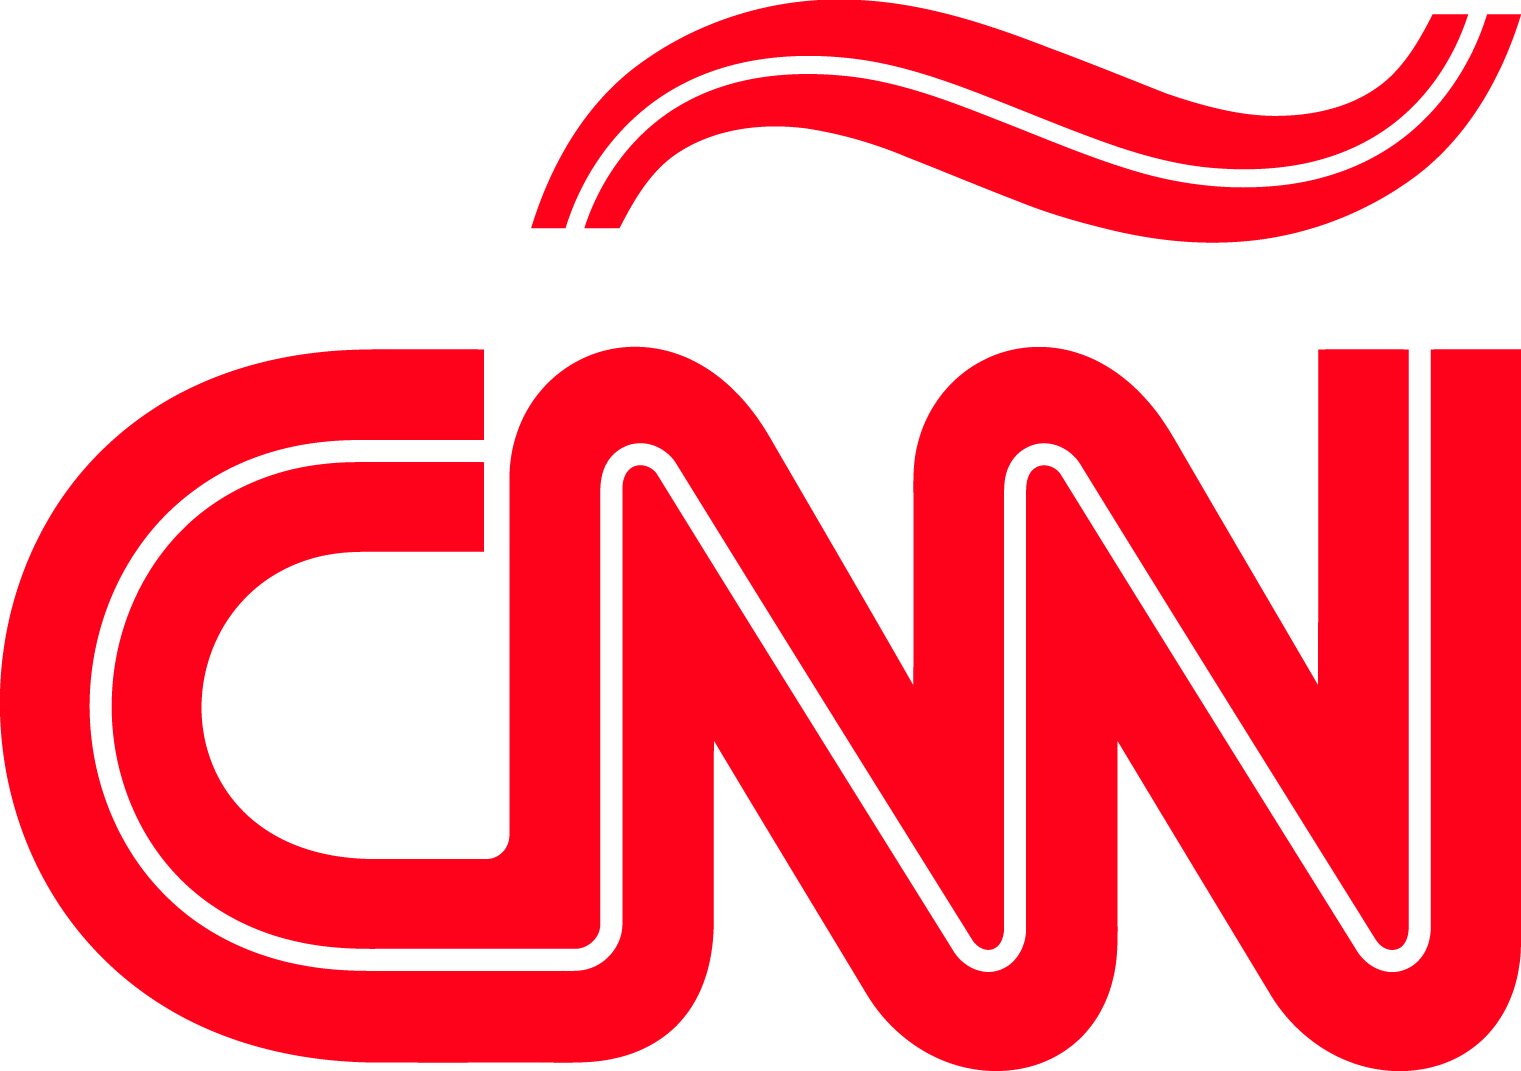 CNN-en-Espanol-01.jpg